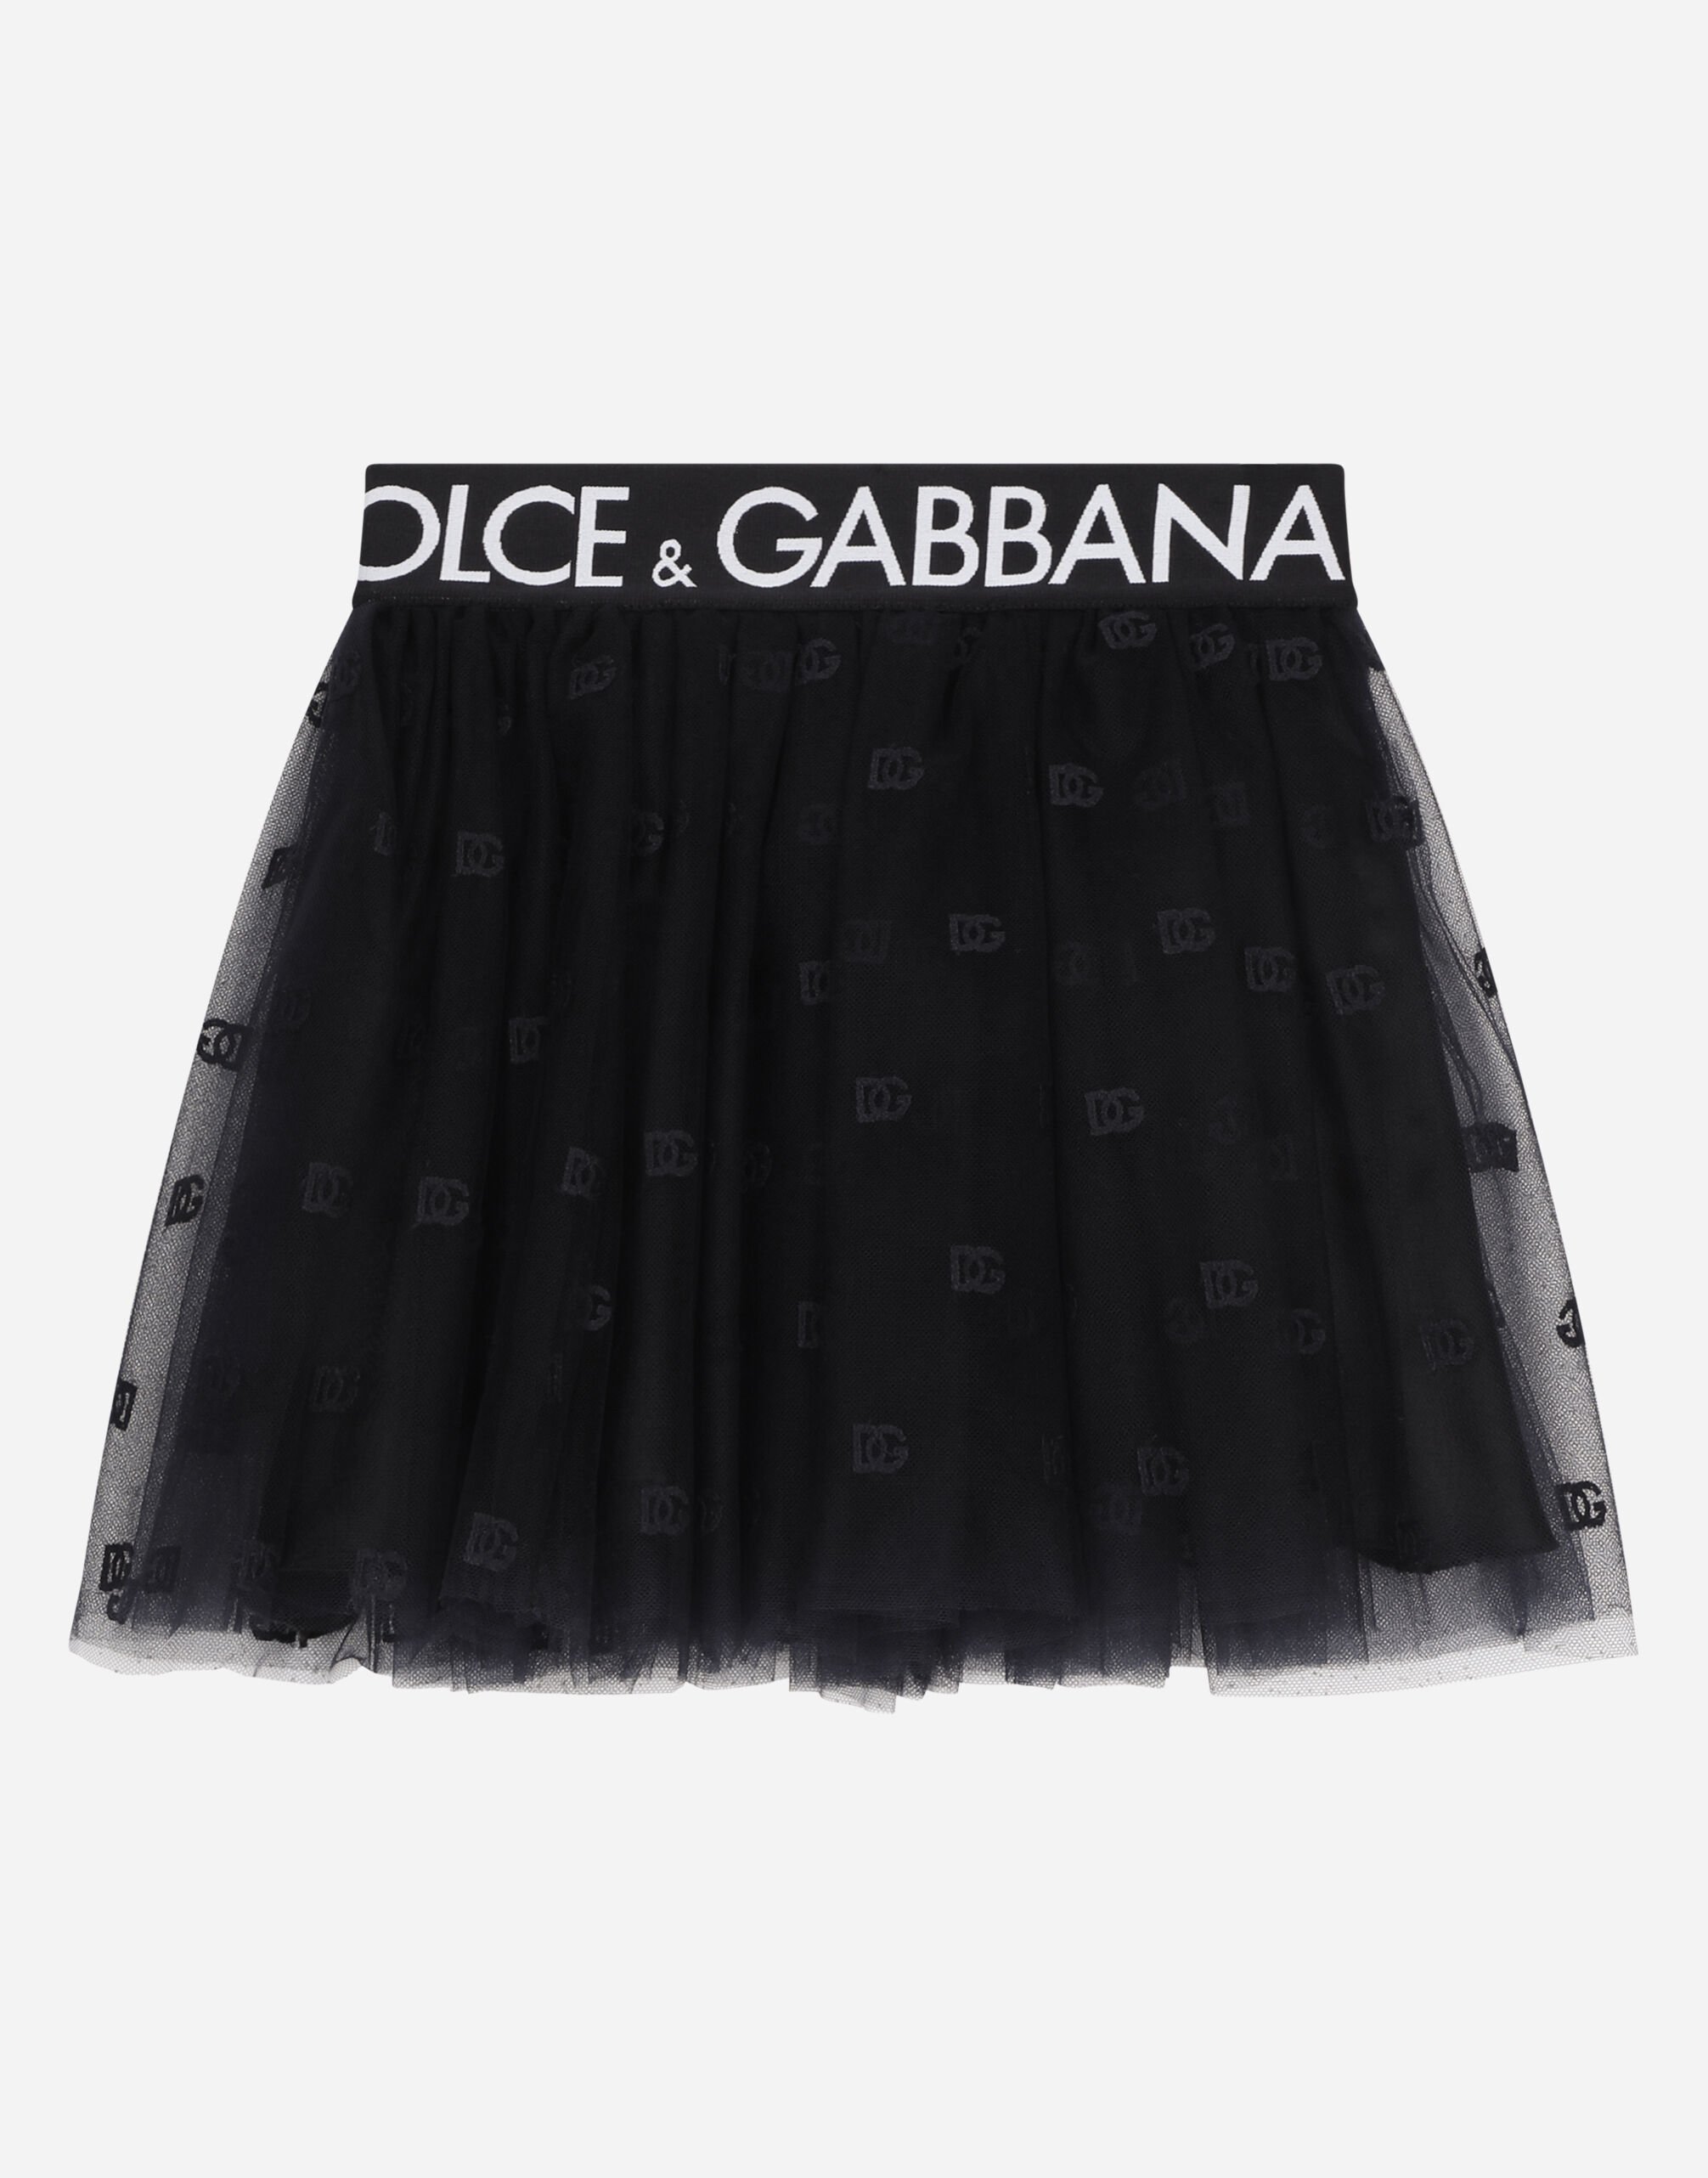 Dolce & Gabbana Mini gonna in tulle multistrato con elastico logato Nero EB0003AB000